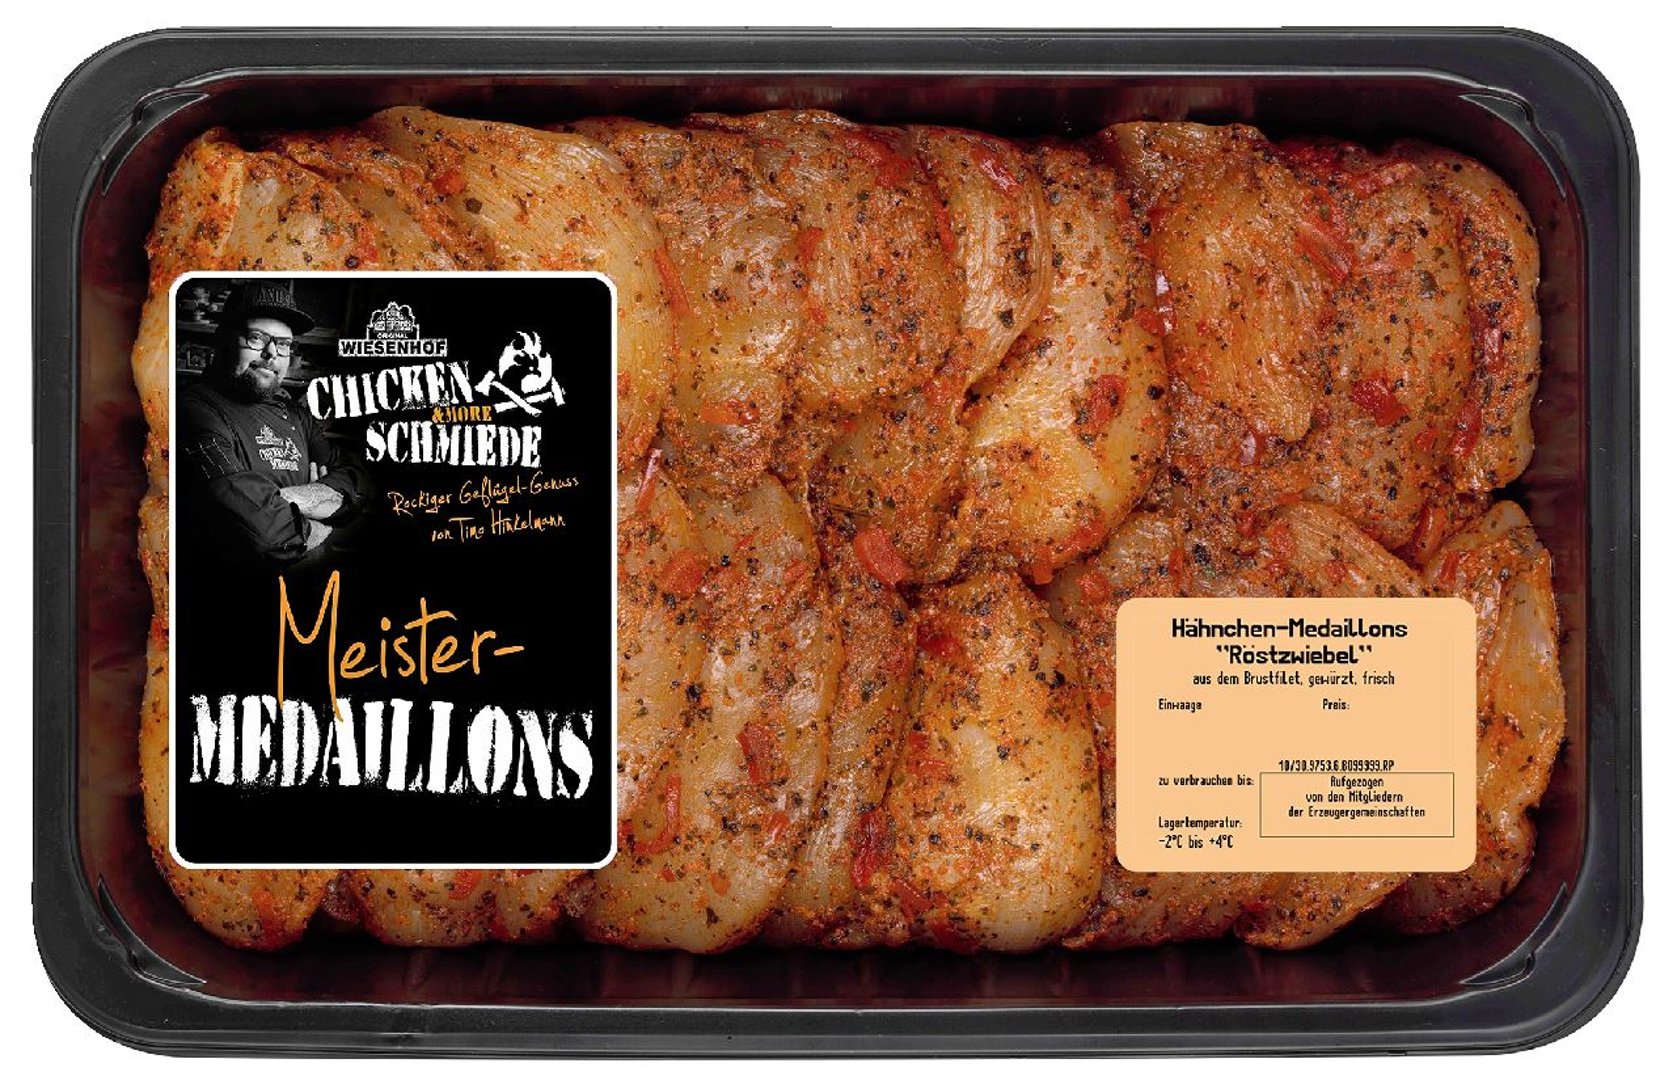 Wsh Chicken Schmiede - Meister Medaillons, Hähnchen - Medaillons gekühlt gewürzt - 1 kg